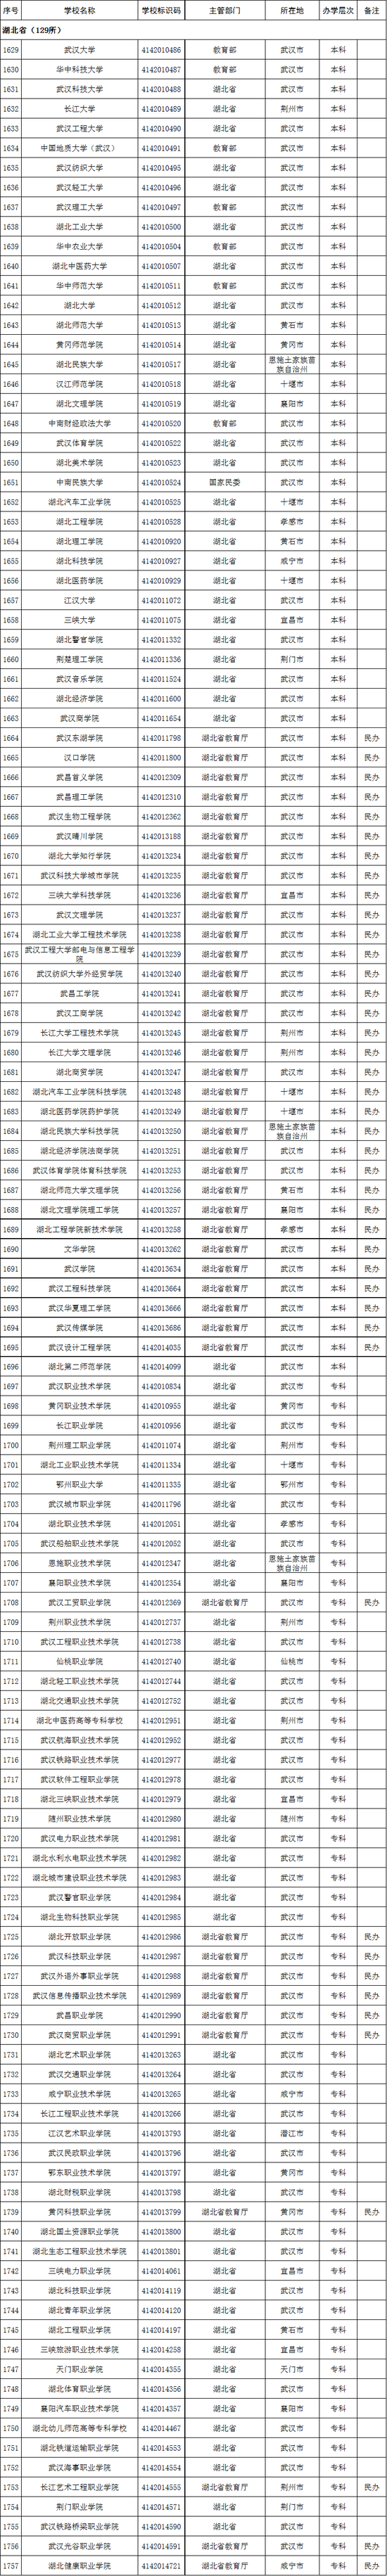 2020年湖北省高校名单(129所)